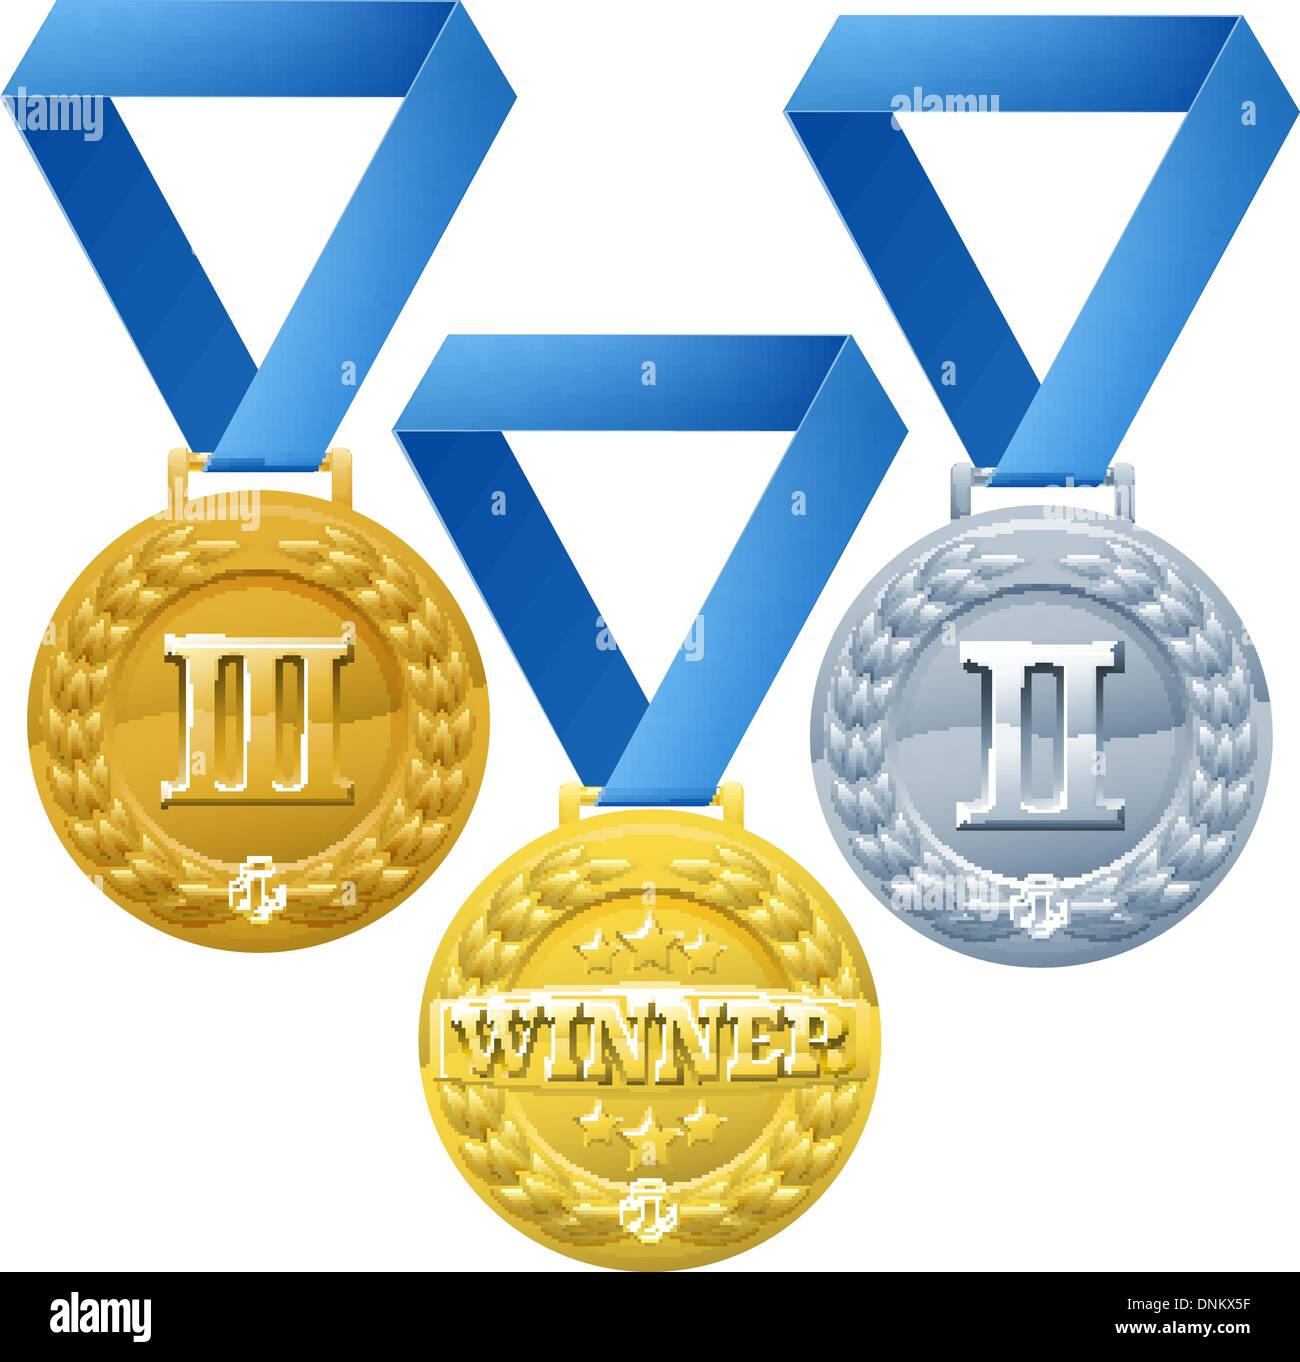 Abbildung der drei Medaillen auf blauen Bändern. Bronze, Silber und Gold Award Gewinner Stock Vektor